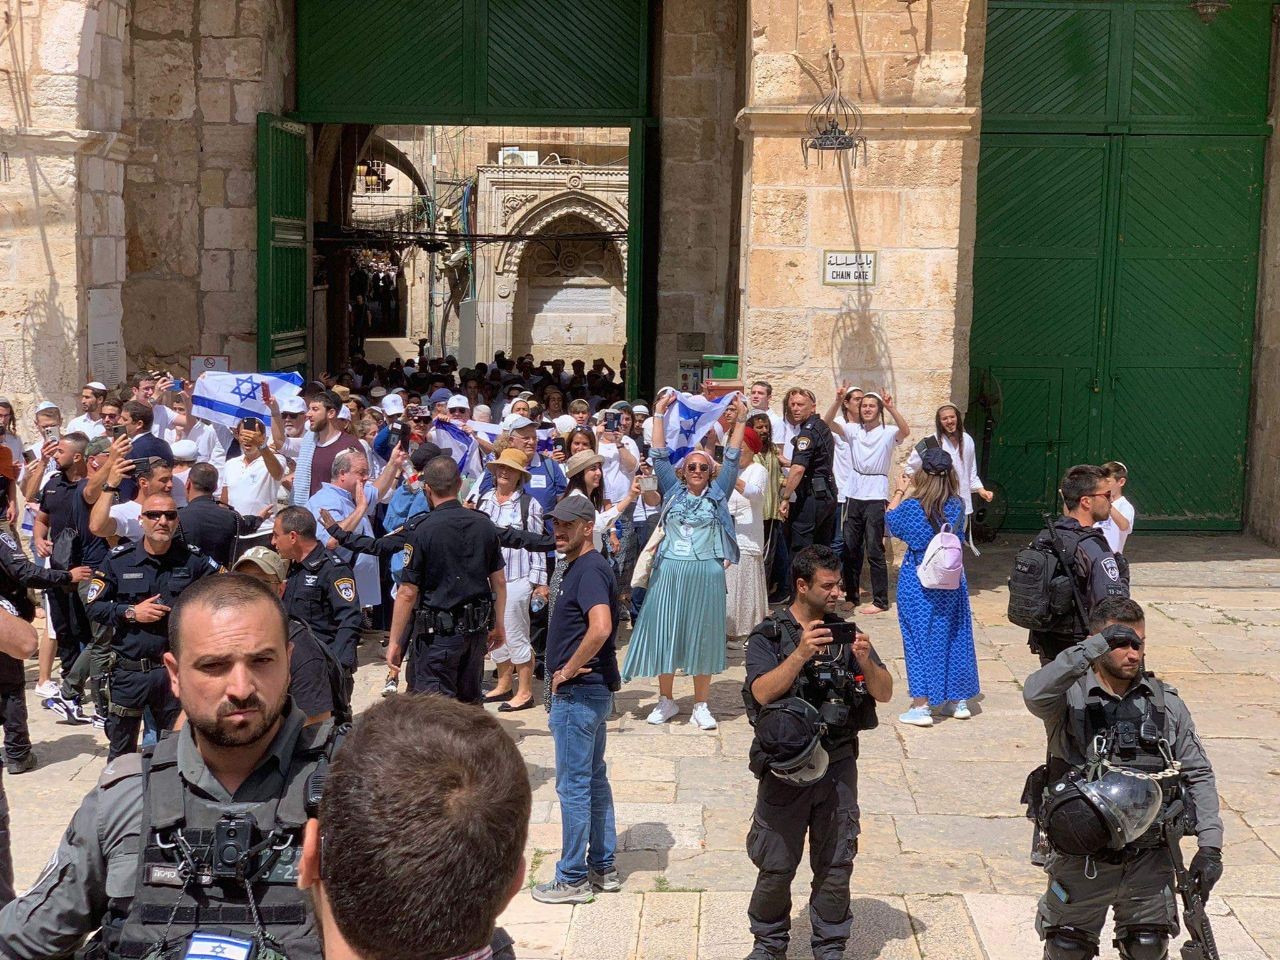 توتر شديد في المسجد الأقصى بعد رفع علم الاحتلال في باحاته قرب باب السلسلة